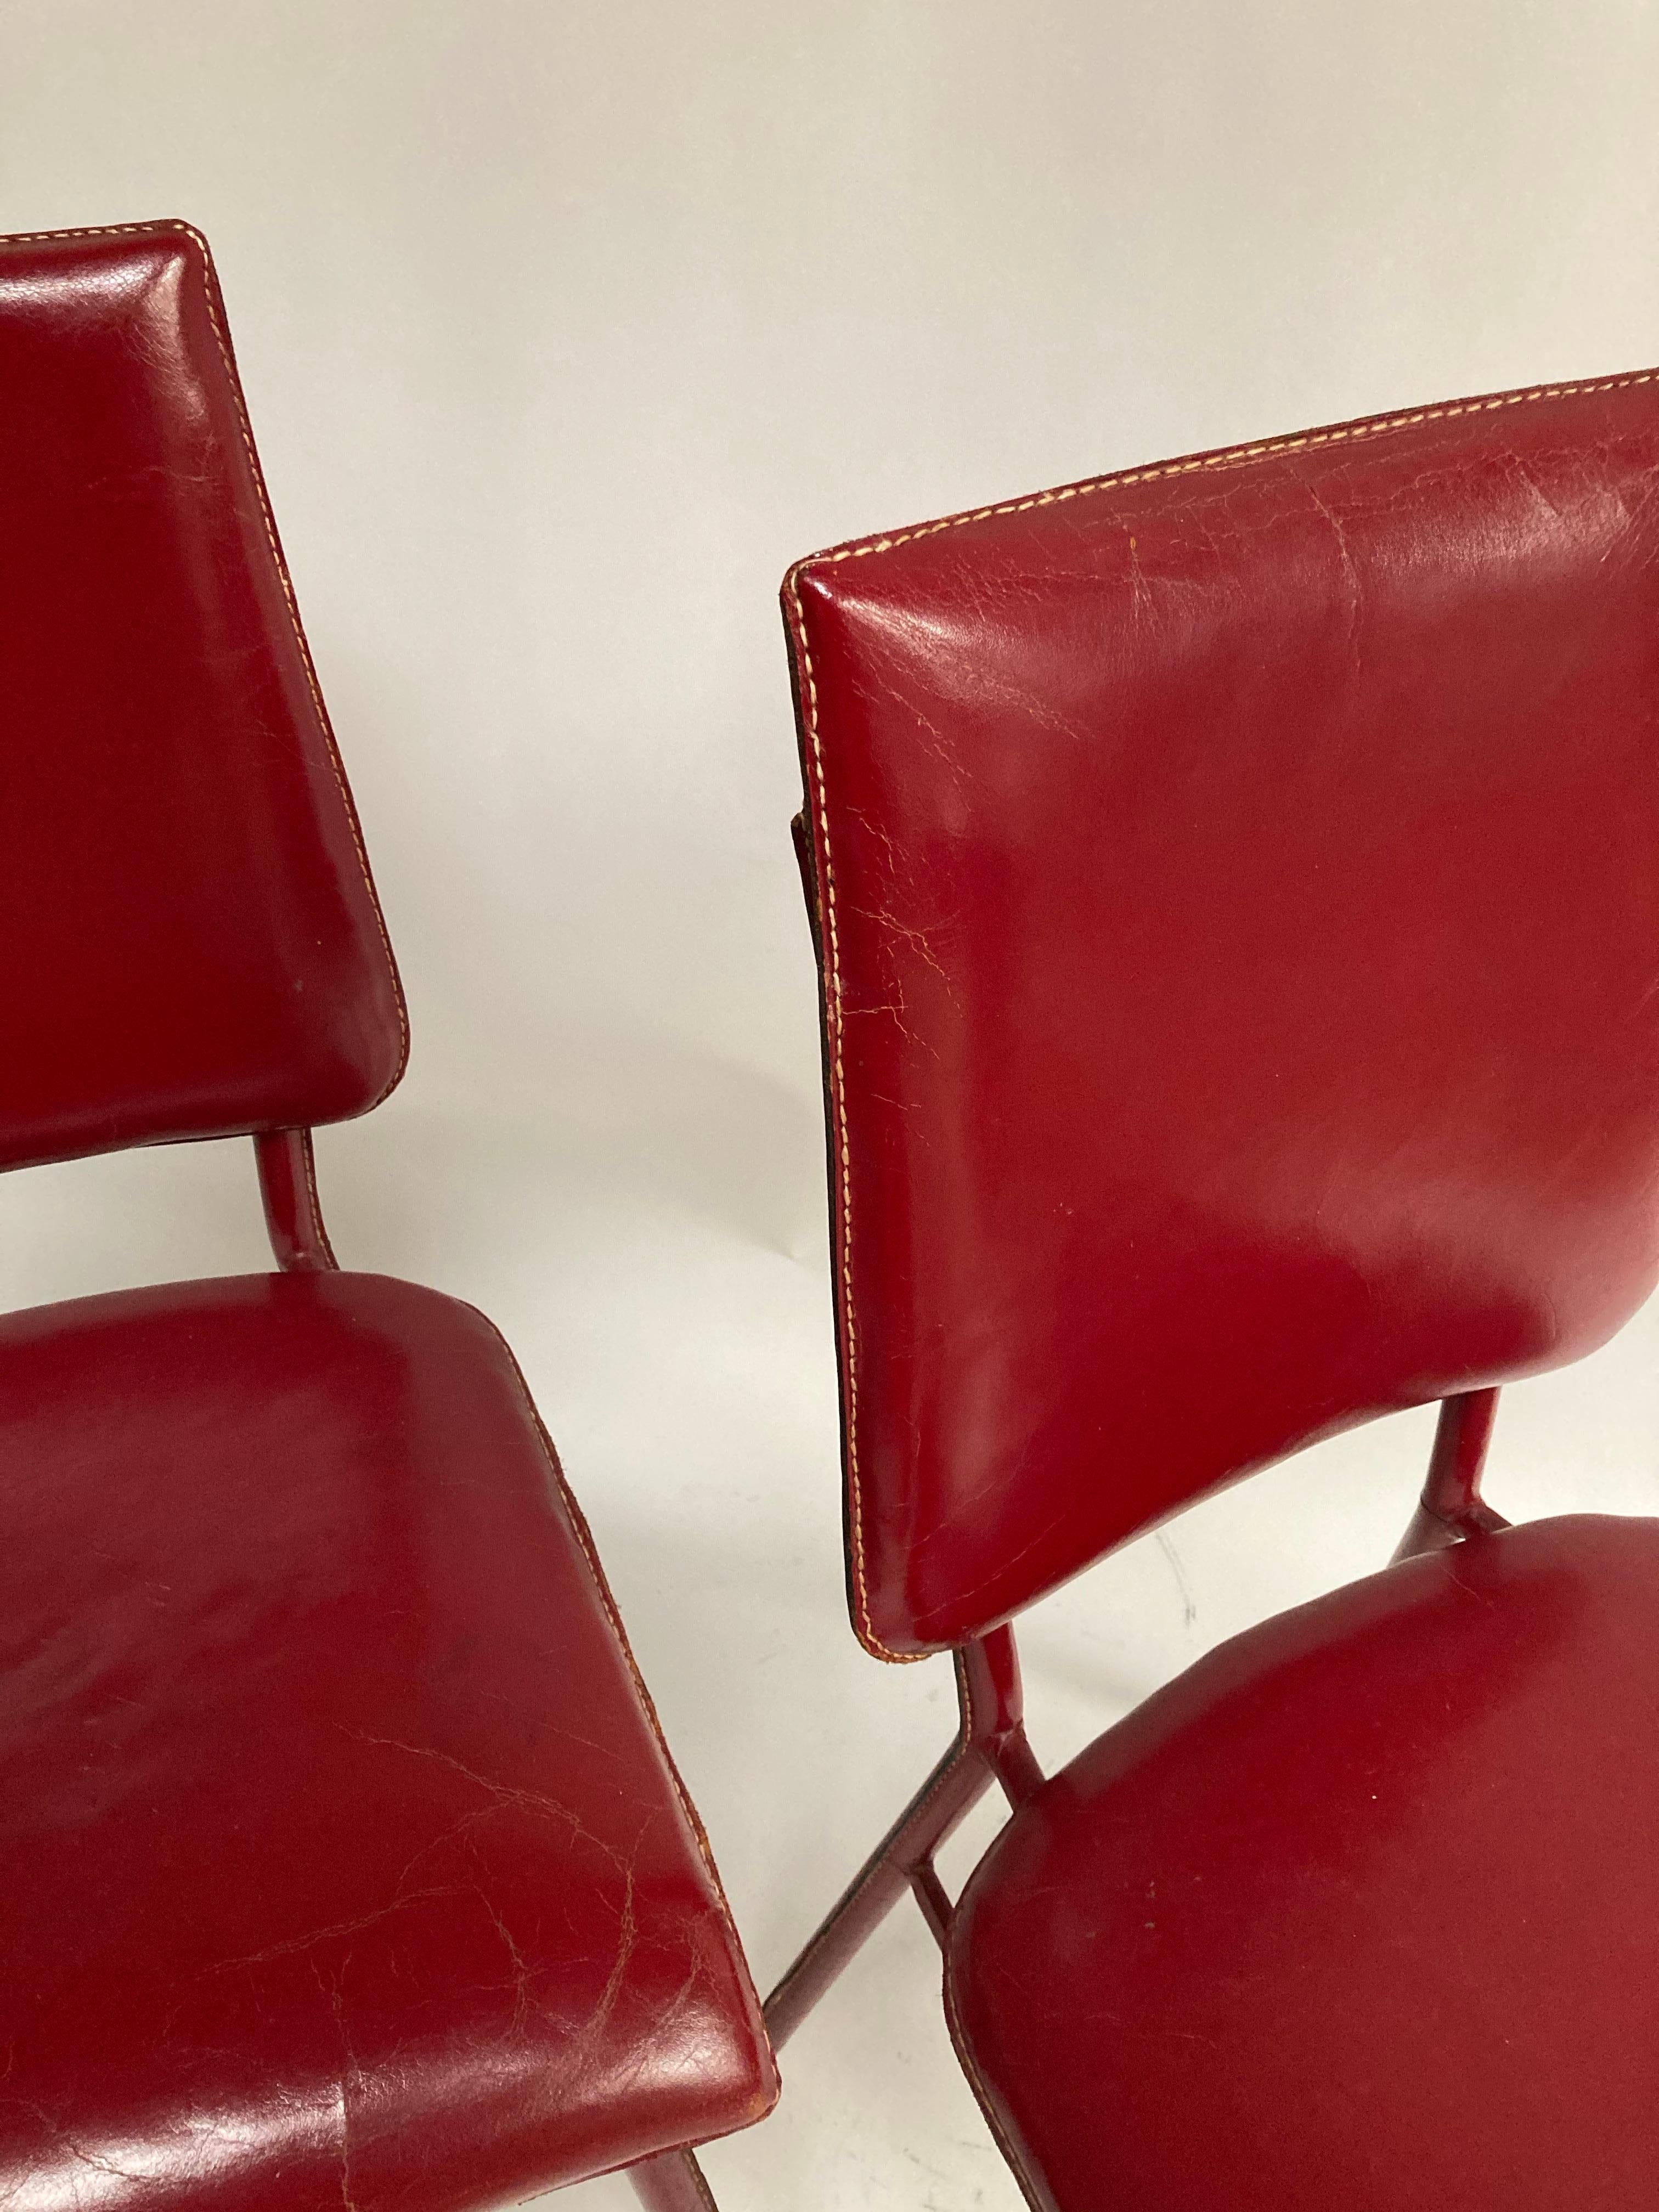 Paire de chaises en cuir rouge surpiqué des années 1950 par Jacques Adnet
France.